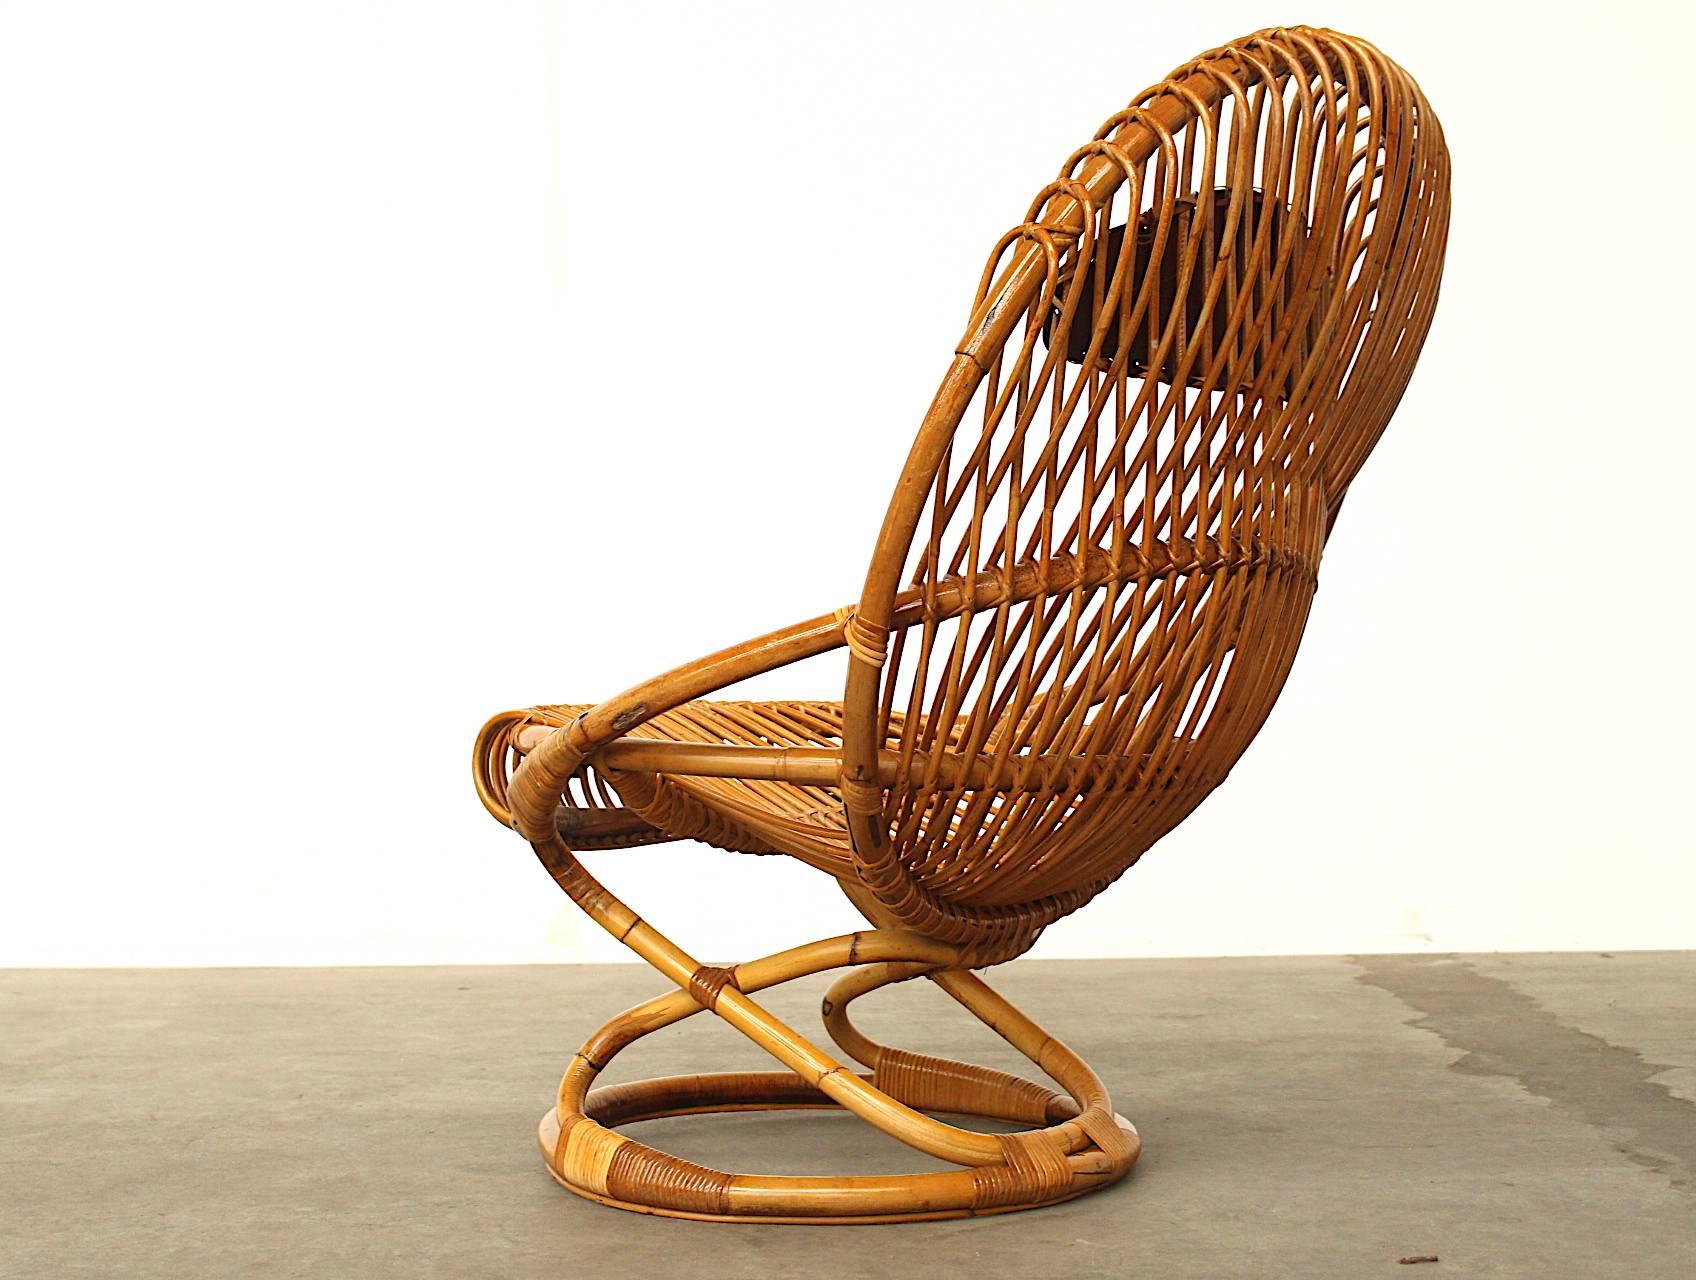 Leather Giovanni Travasa for Bonacina Wicker Easy Chair, circa 1950